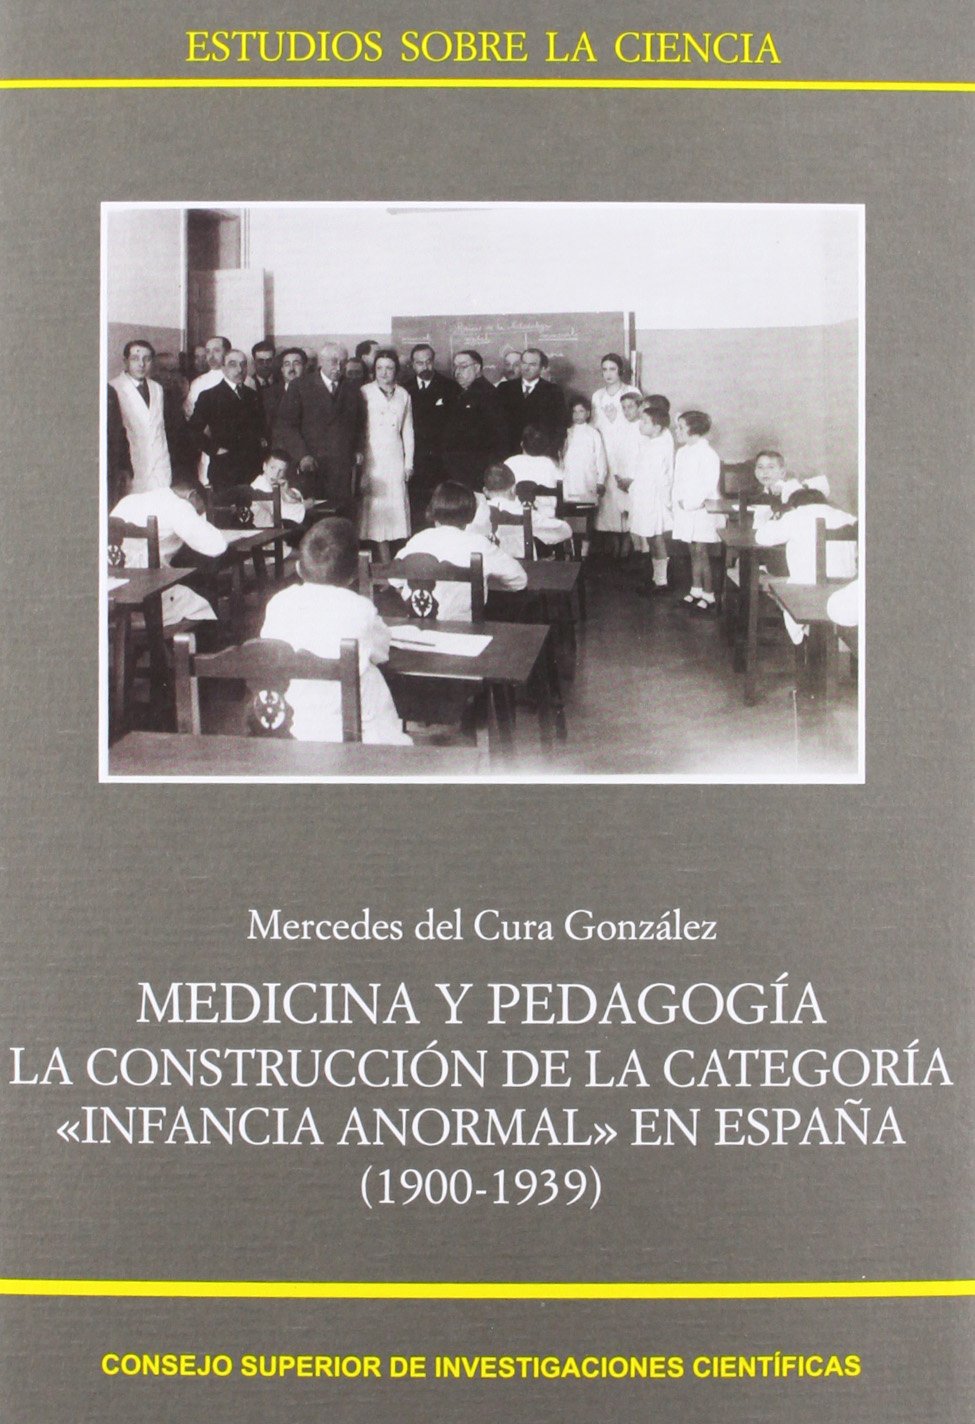 Imagen de portada del libro Medicina y pedagogía